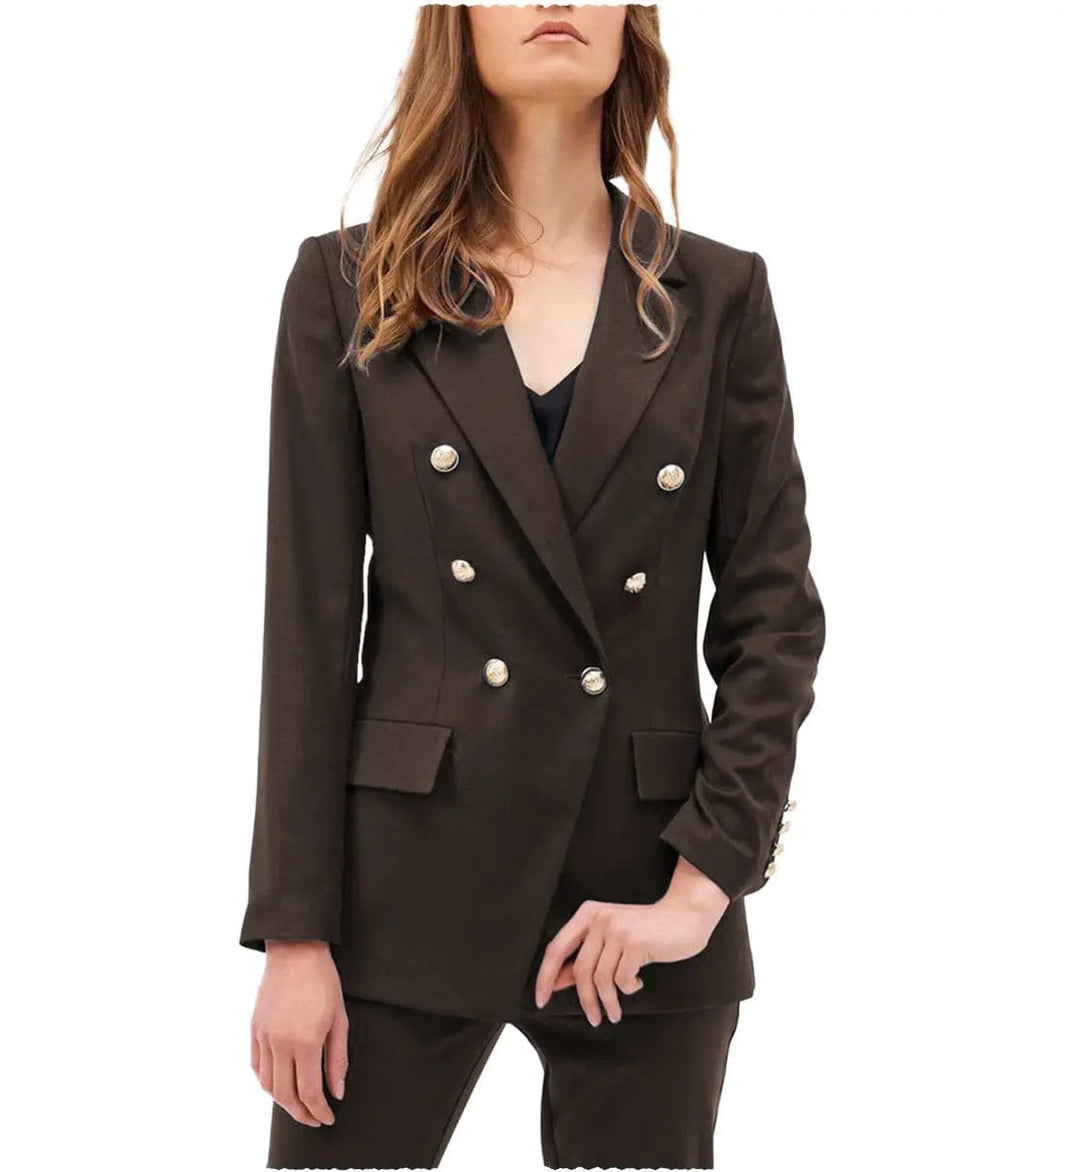 solovedress Fashion Notch Lapel Blazer  Flat 2 Pieces Women Suit